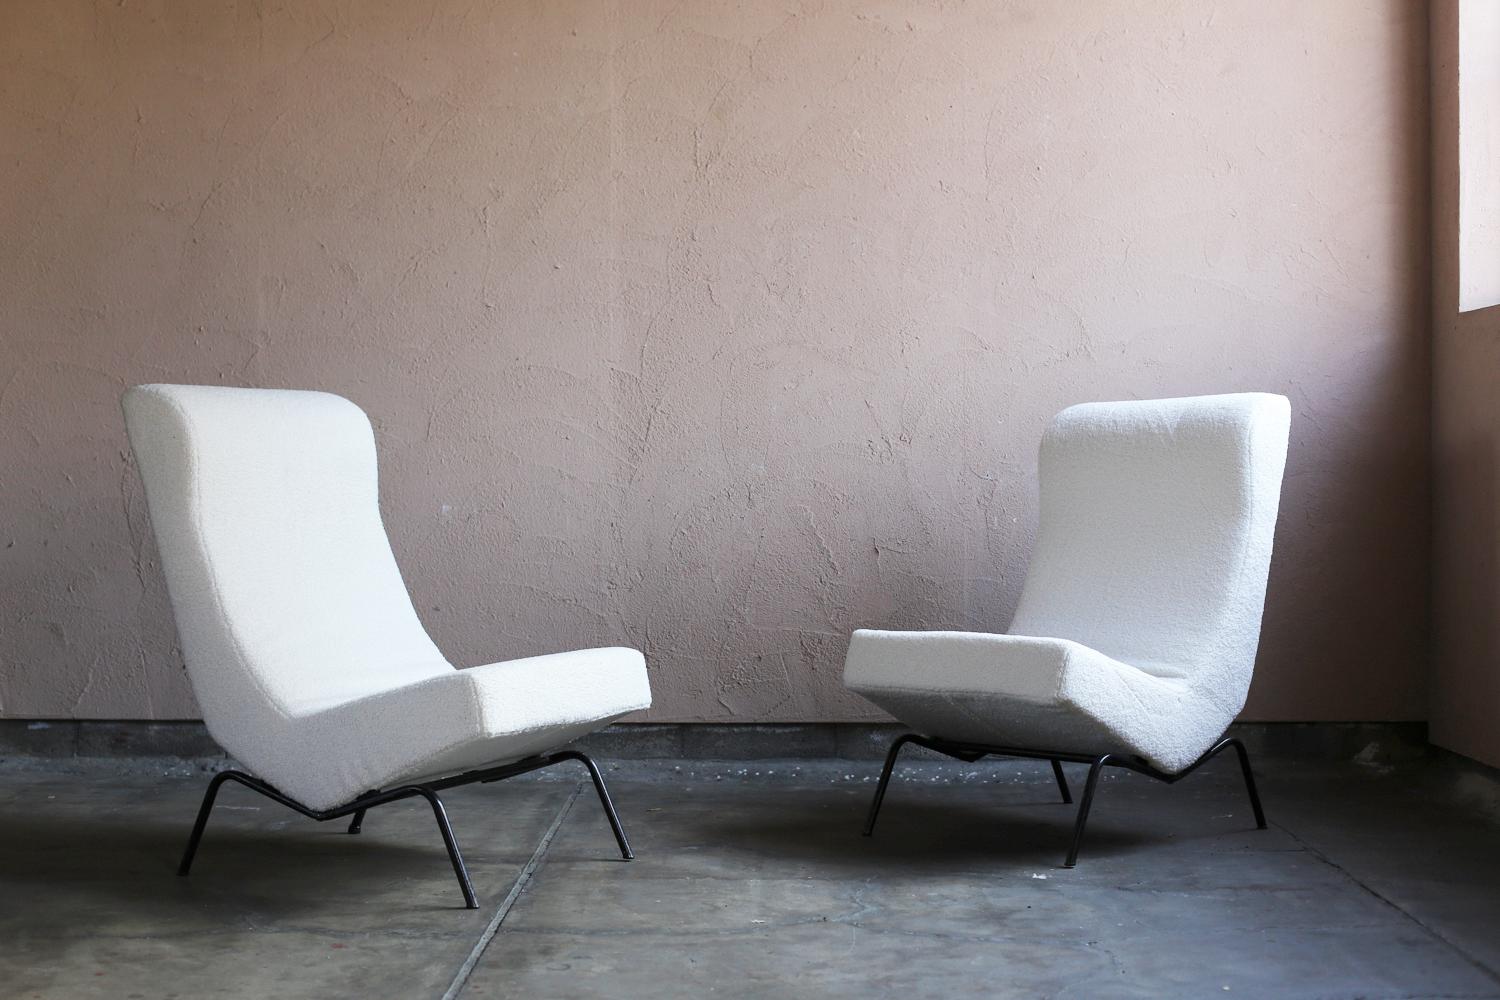 Paire de fauteuils au design caractéristique du milieu du XXe siècle, modèle CM 194. Cette paire de chaises est une des premières pièces conçues par le designer visionnaire Pierre Paulin pour la société française de meubles Thonet vers 1958. Cet